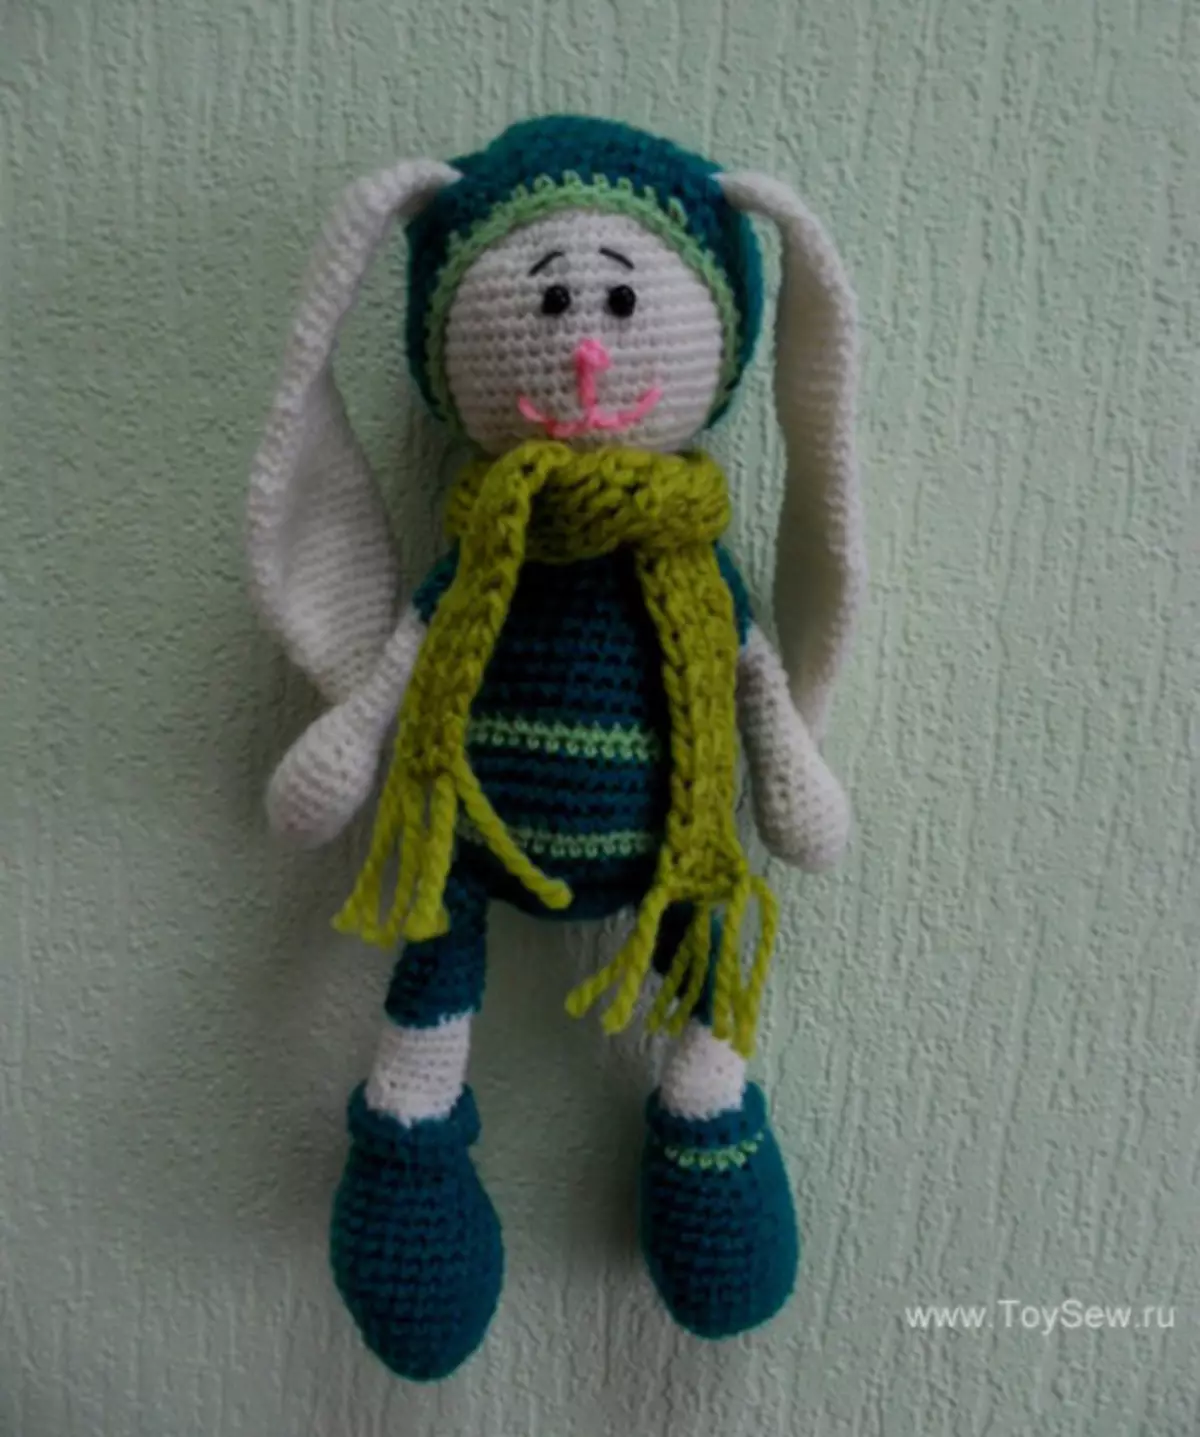 Amigurum Crochet Bunny: Schemes bi danasîn û vîdyoyê